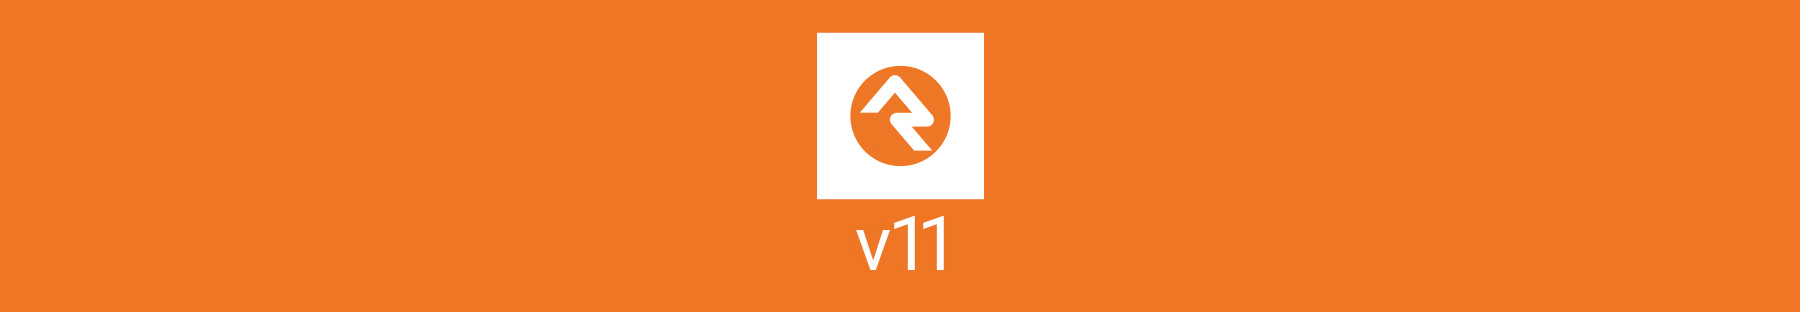 v11 Release